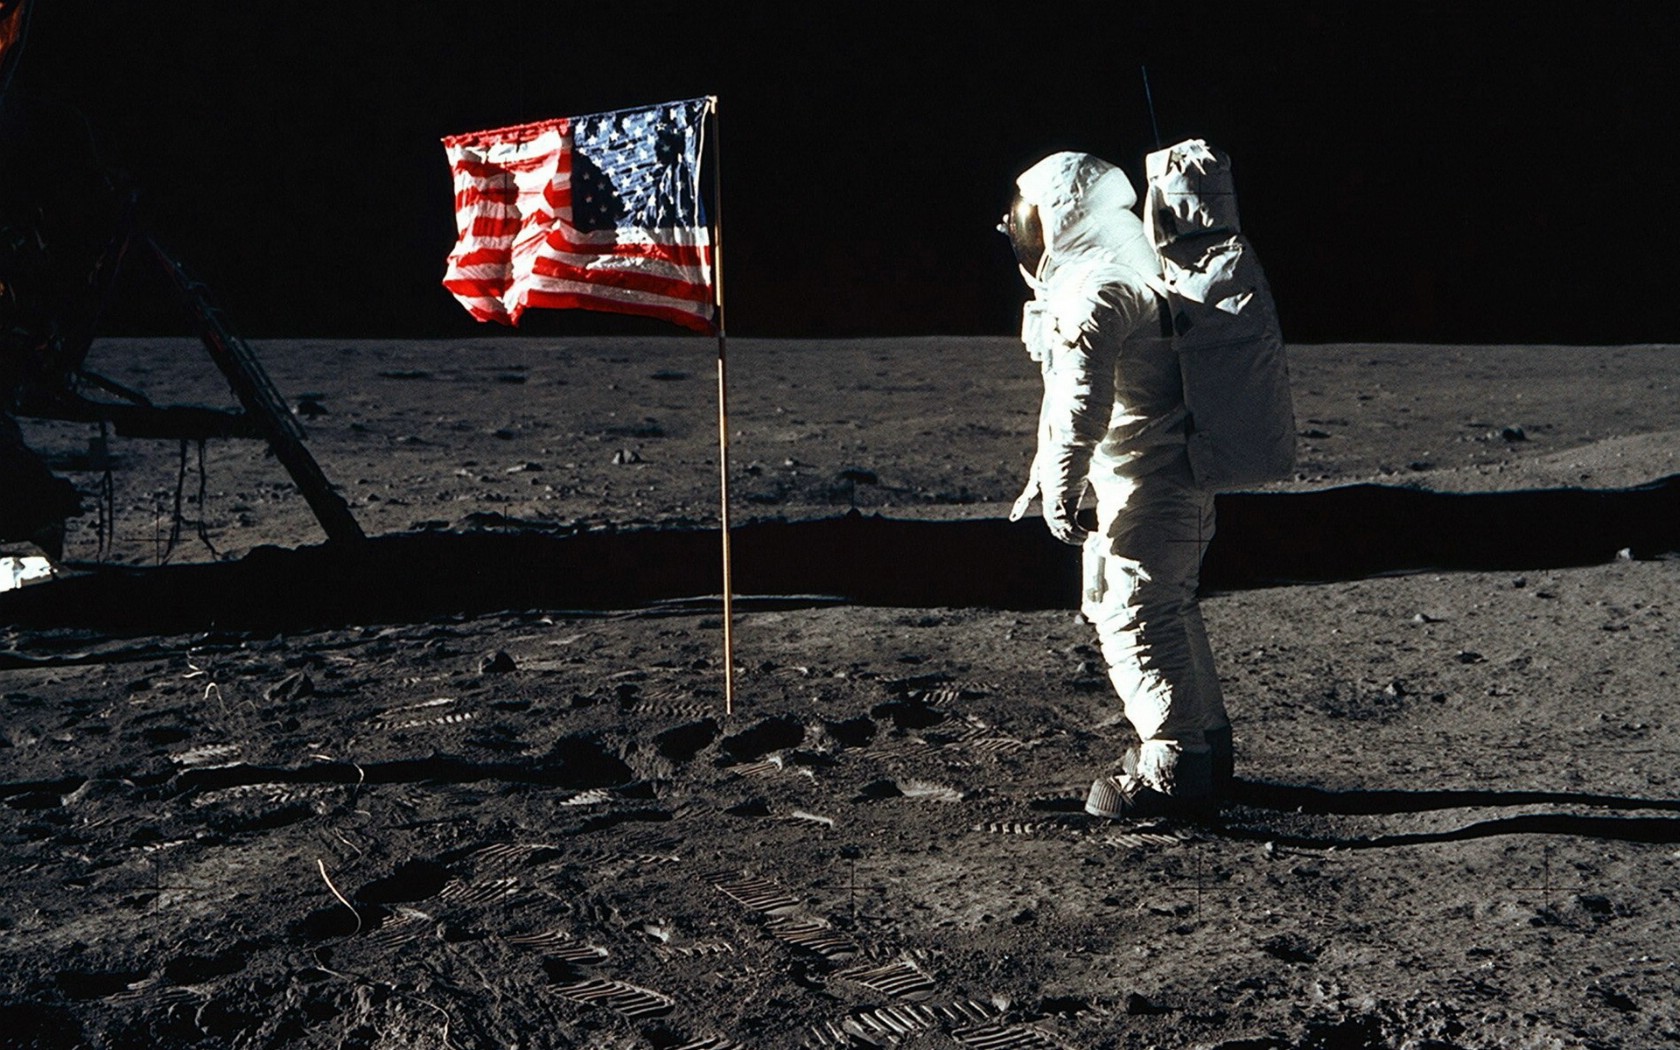 壁纸1680x1050阿波罗11 Apollo 11 珍贵照片壁纸 壁纸19壁纸 阿波罗11 （Apo壁纸 阿波罗11 （Apo图片 阿波罗11 （Apo素材 风景壁纸 风景图库 风景图片素材桌面壁纸